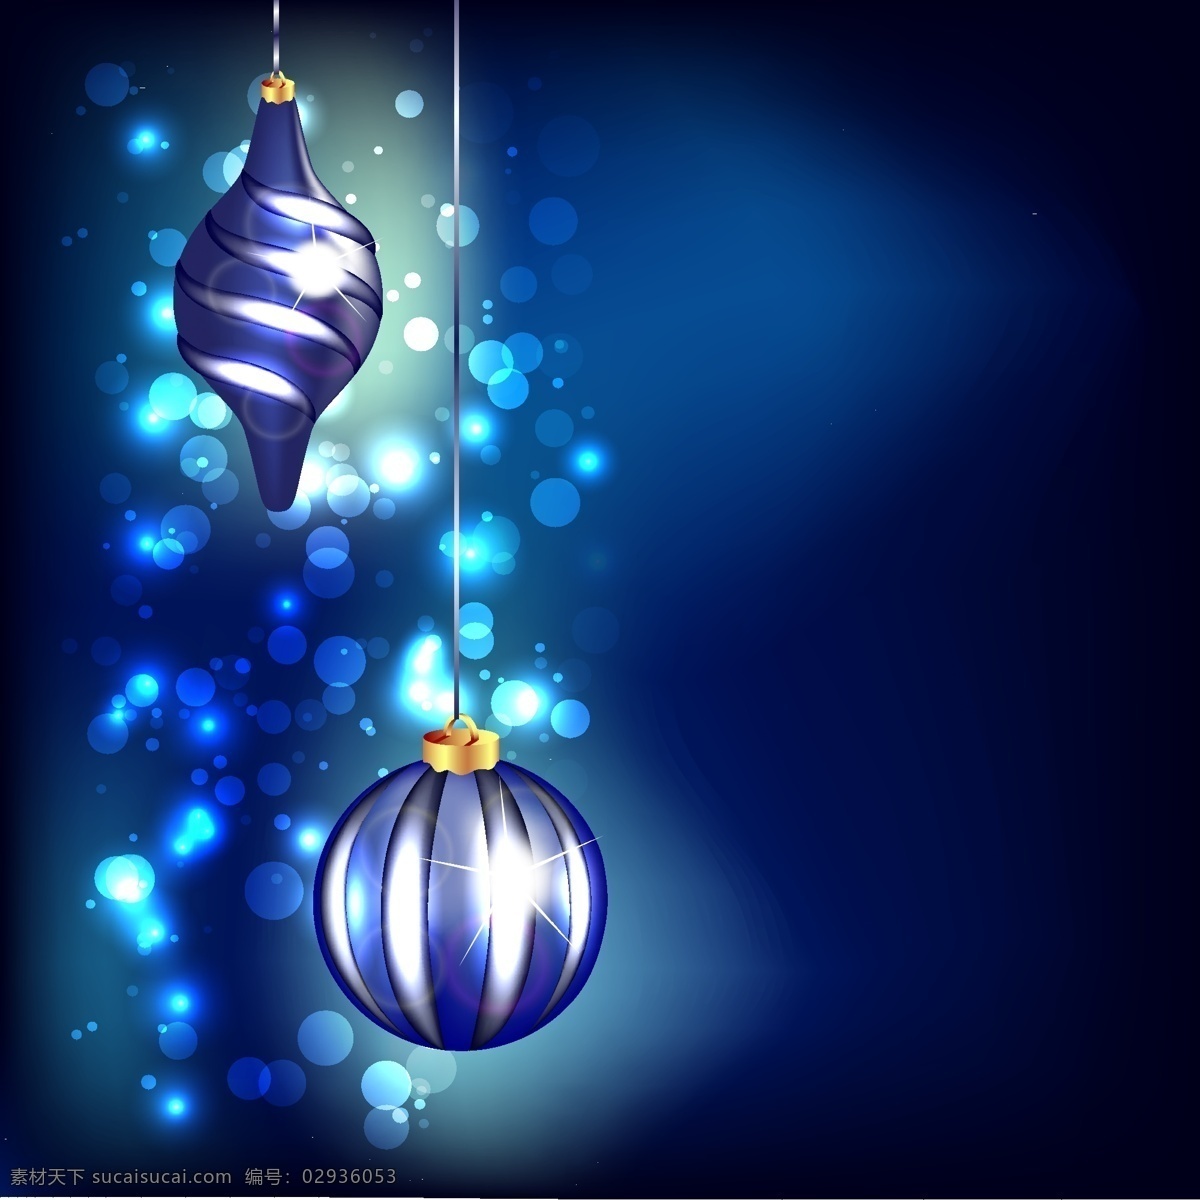 蓝色 背景 虚化 小 玩意 圣诞节 蓝色的背景 圣诞快乐 冬天 庆祝节日 球 背景虚化 节日快乐 冬天的背景 圣诞球 玩具 黑色